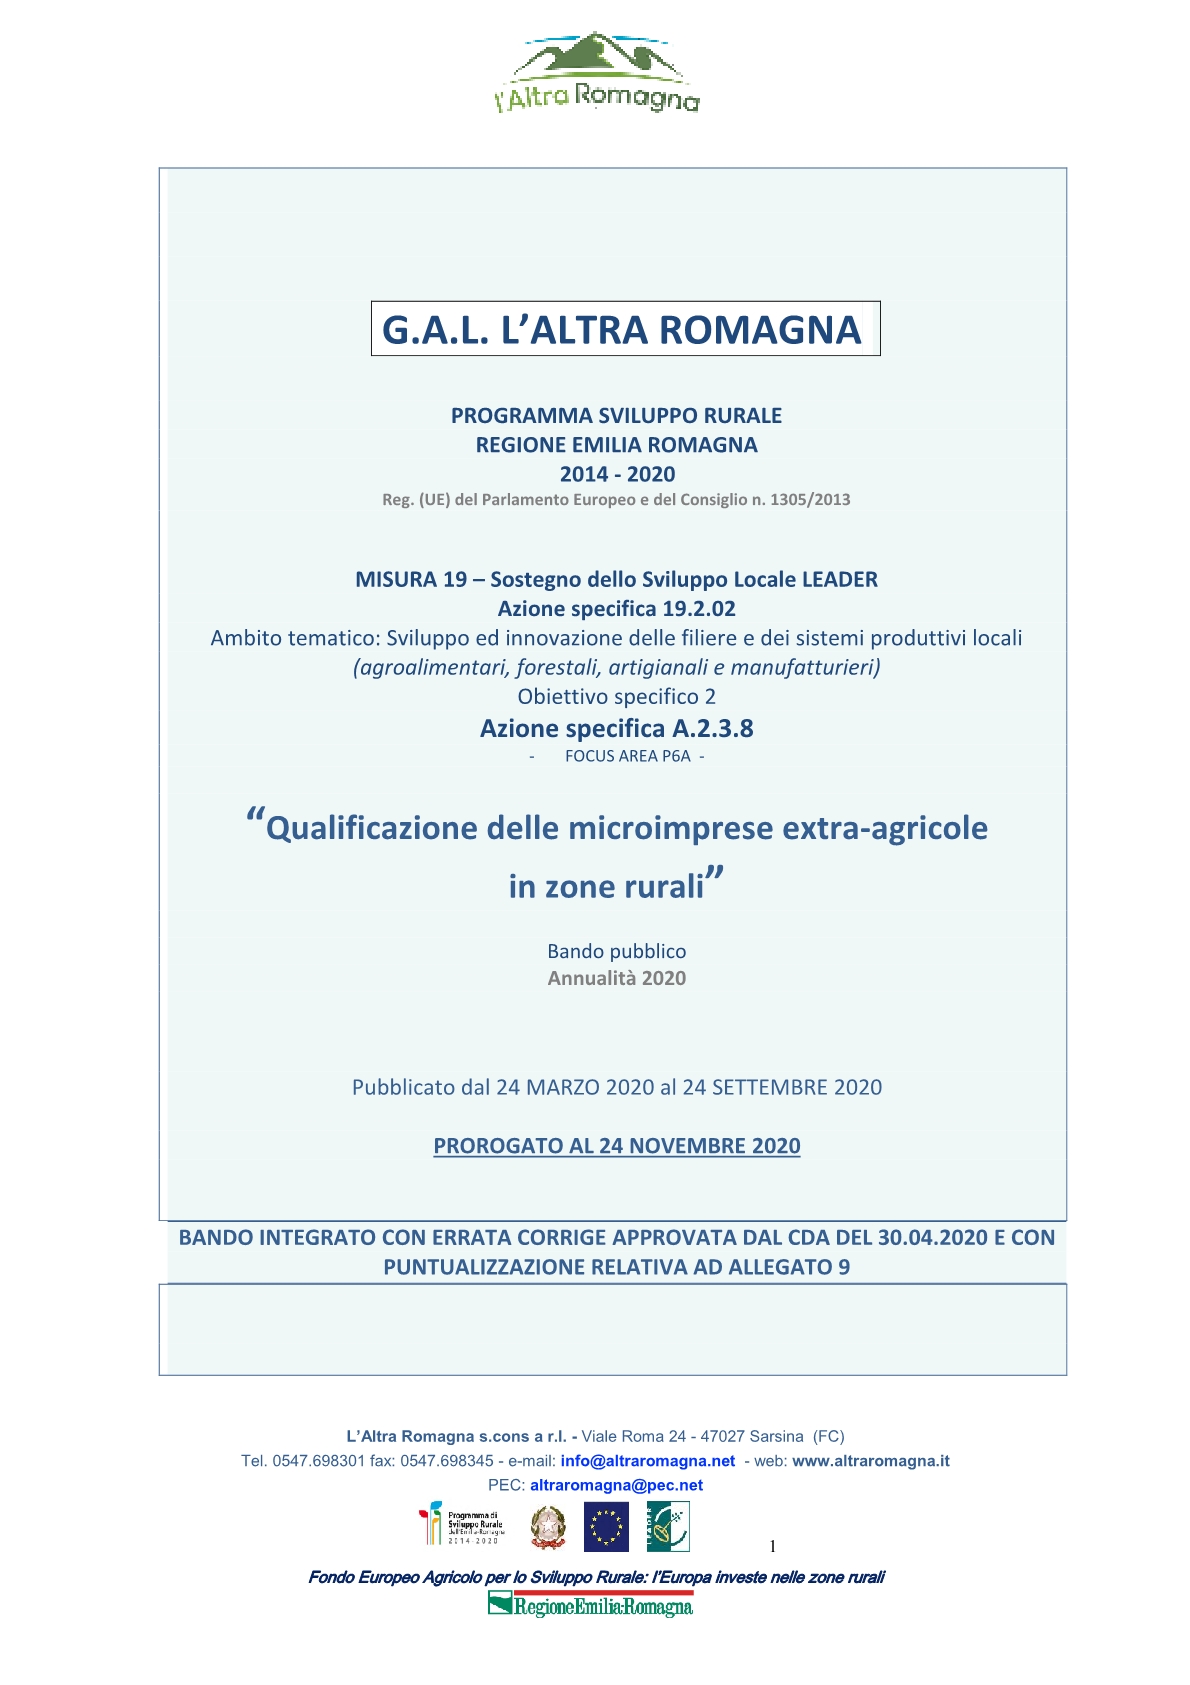 Prorogato al 24 novembre il bando del Gal l’altra Romagna “Qualificazione delle microimprese extra-agricole in zone rurali”